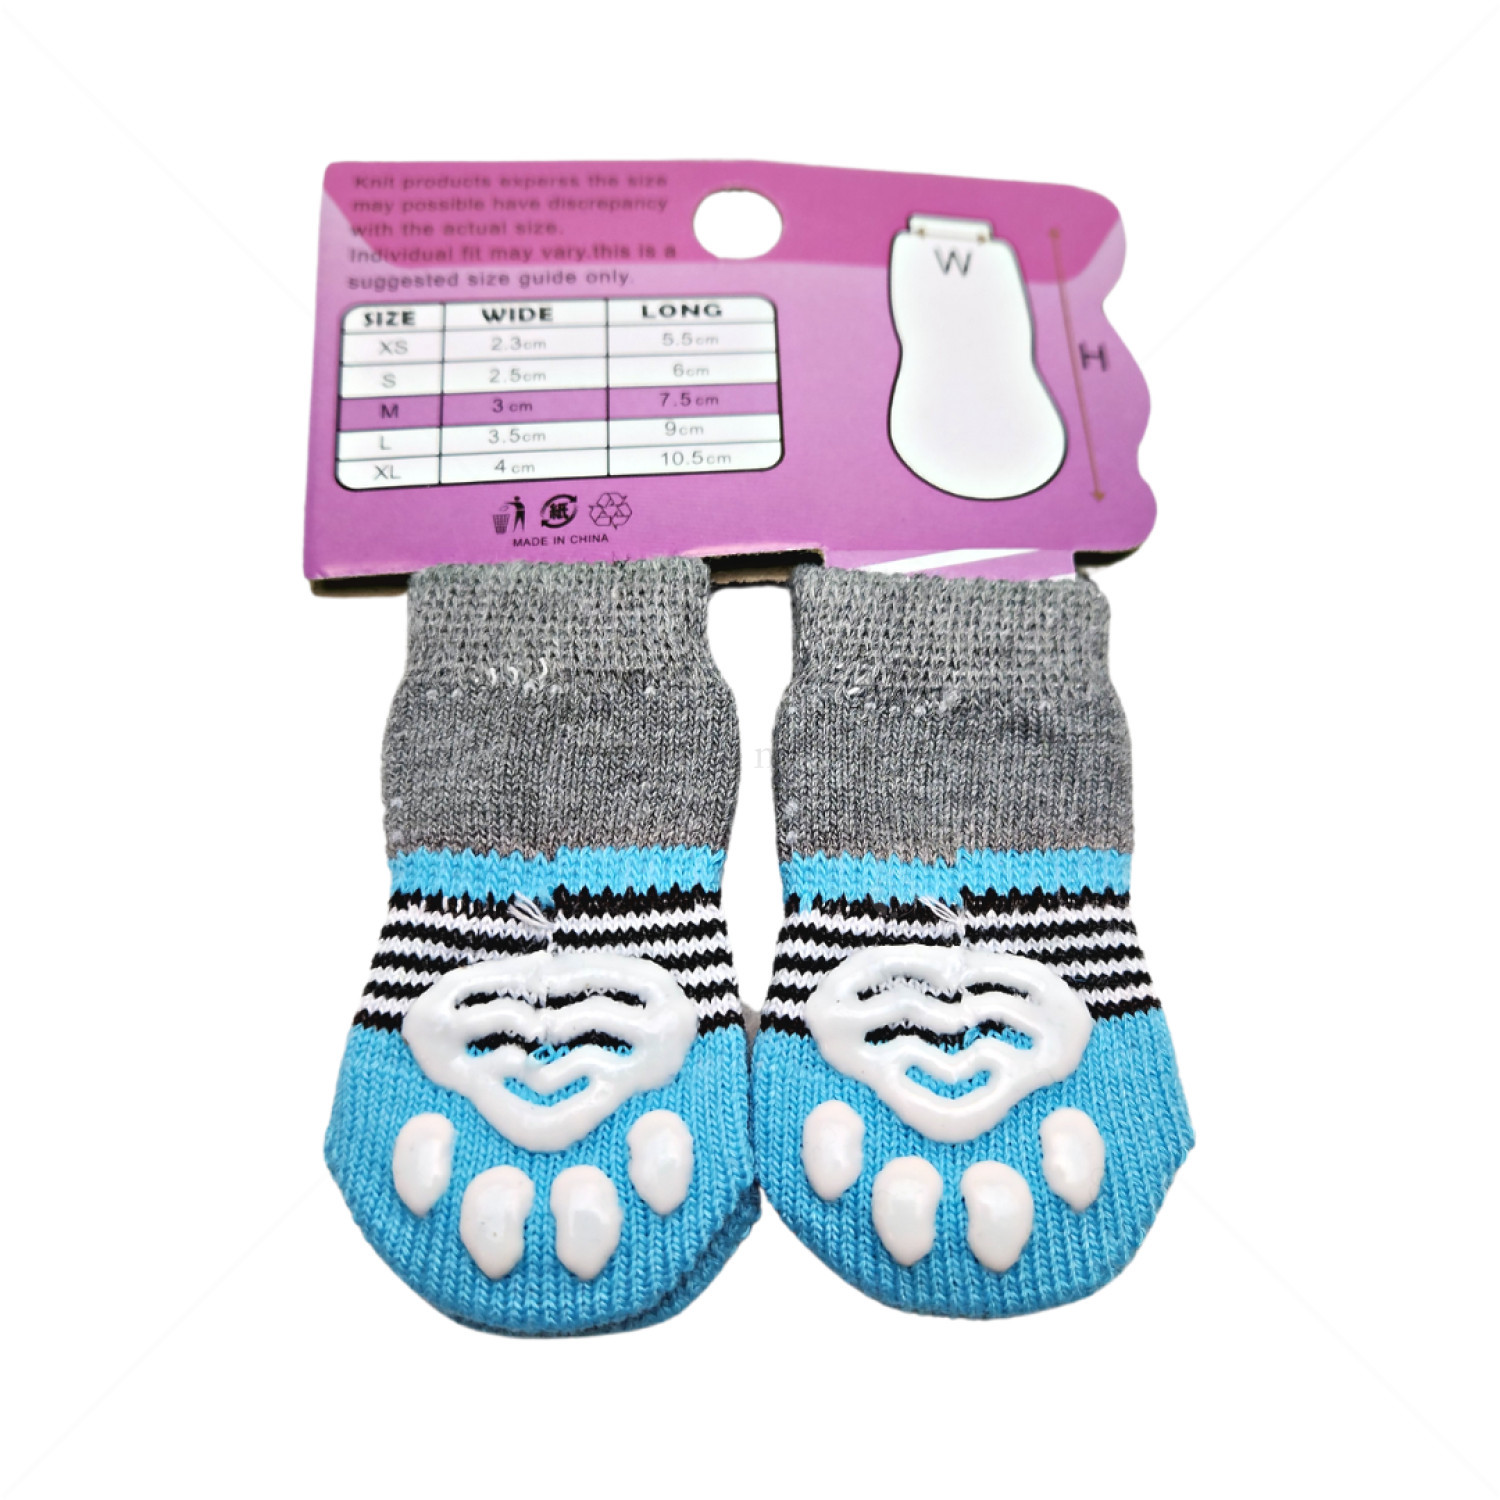 Противоплъзгащи се чорапи за кучета MINA PET, размер M,  4 бр, сини